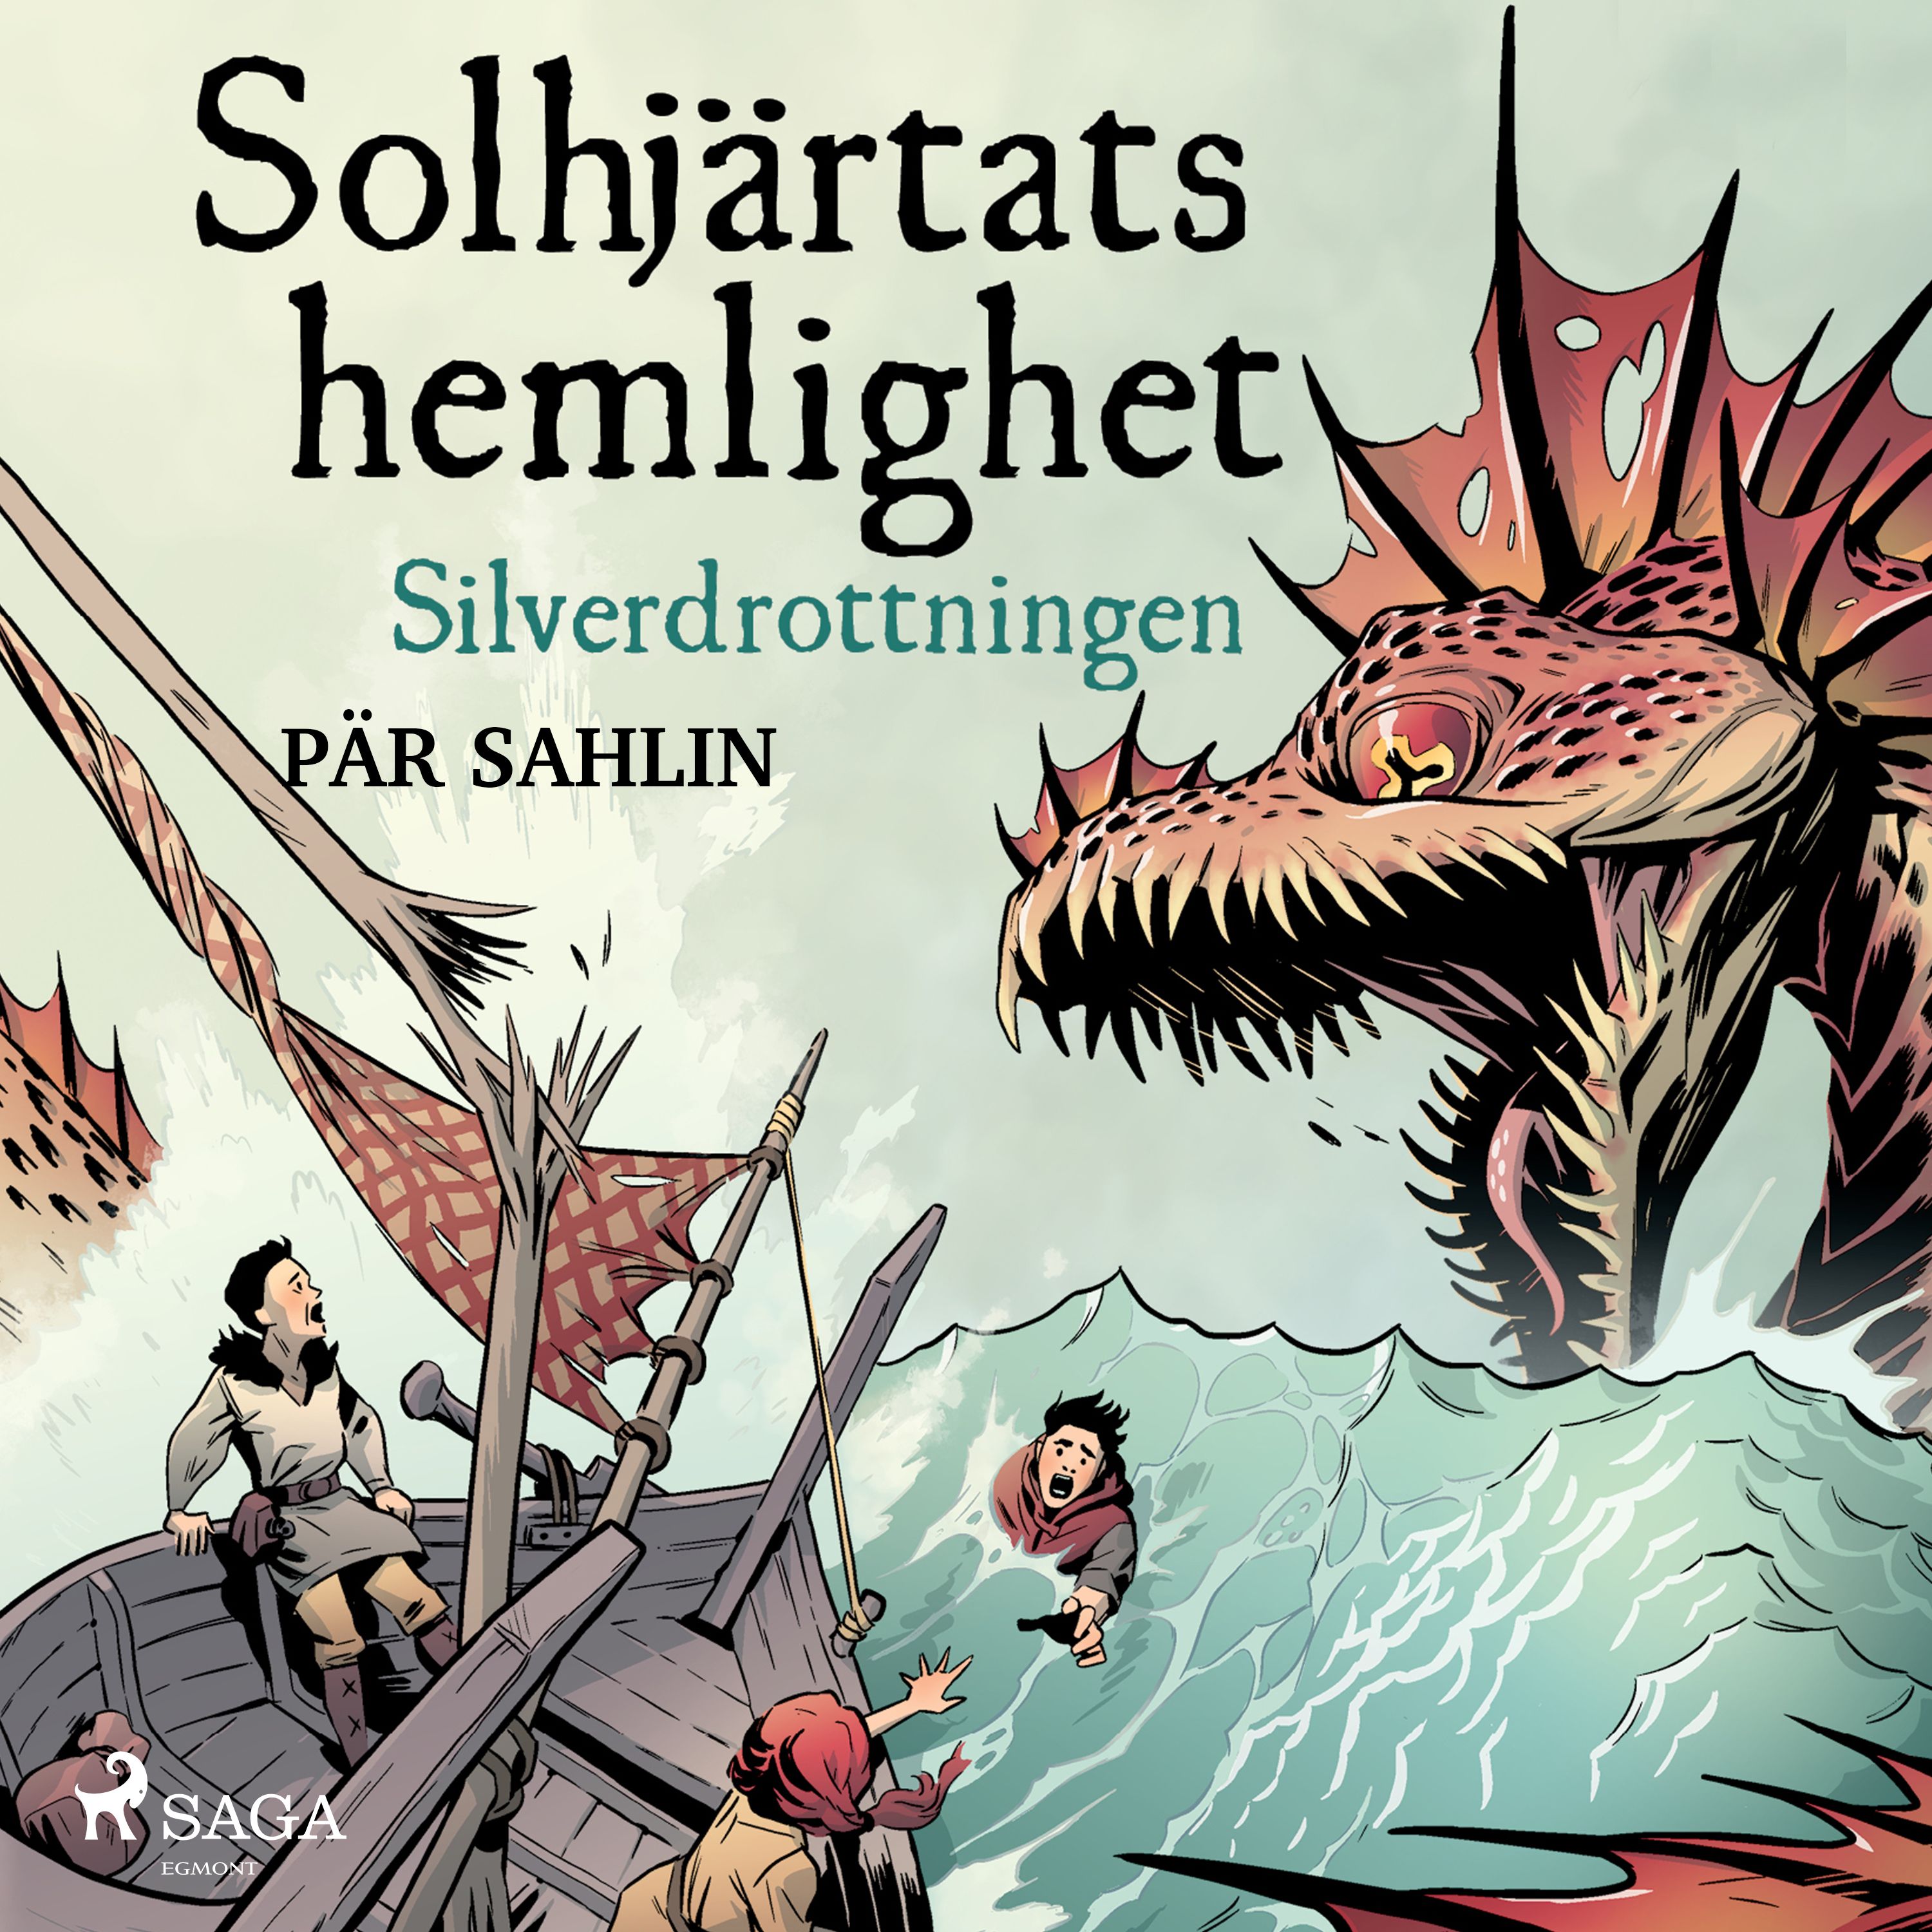 Solhjärtats hemlighet - Silverdrottningen, audiobook by Pär Sahlin